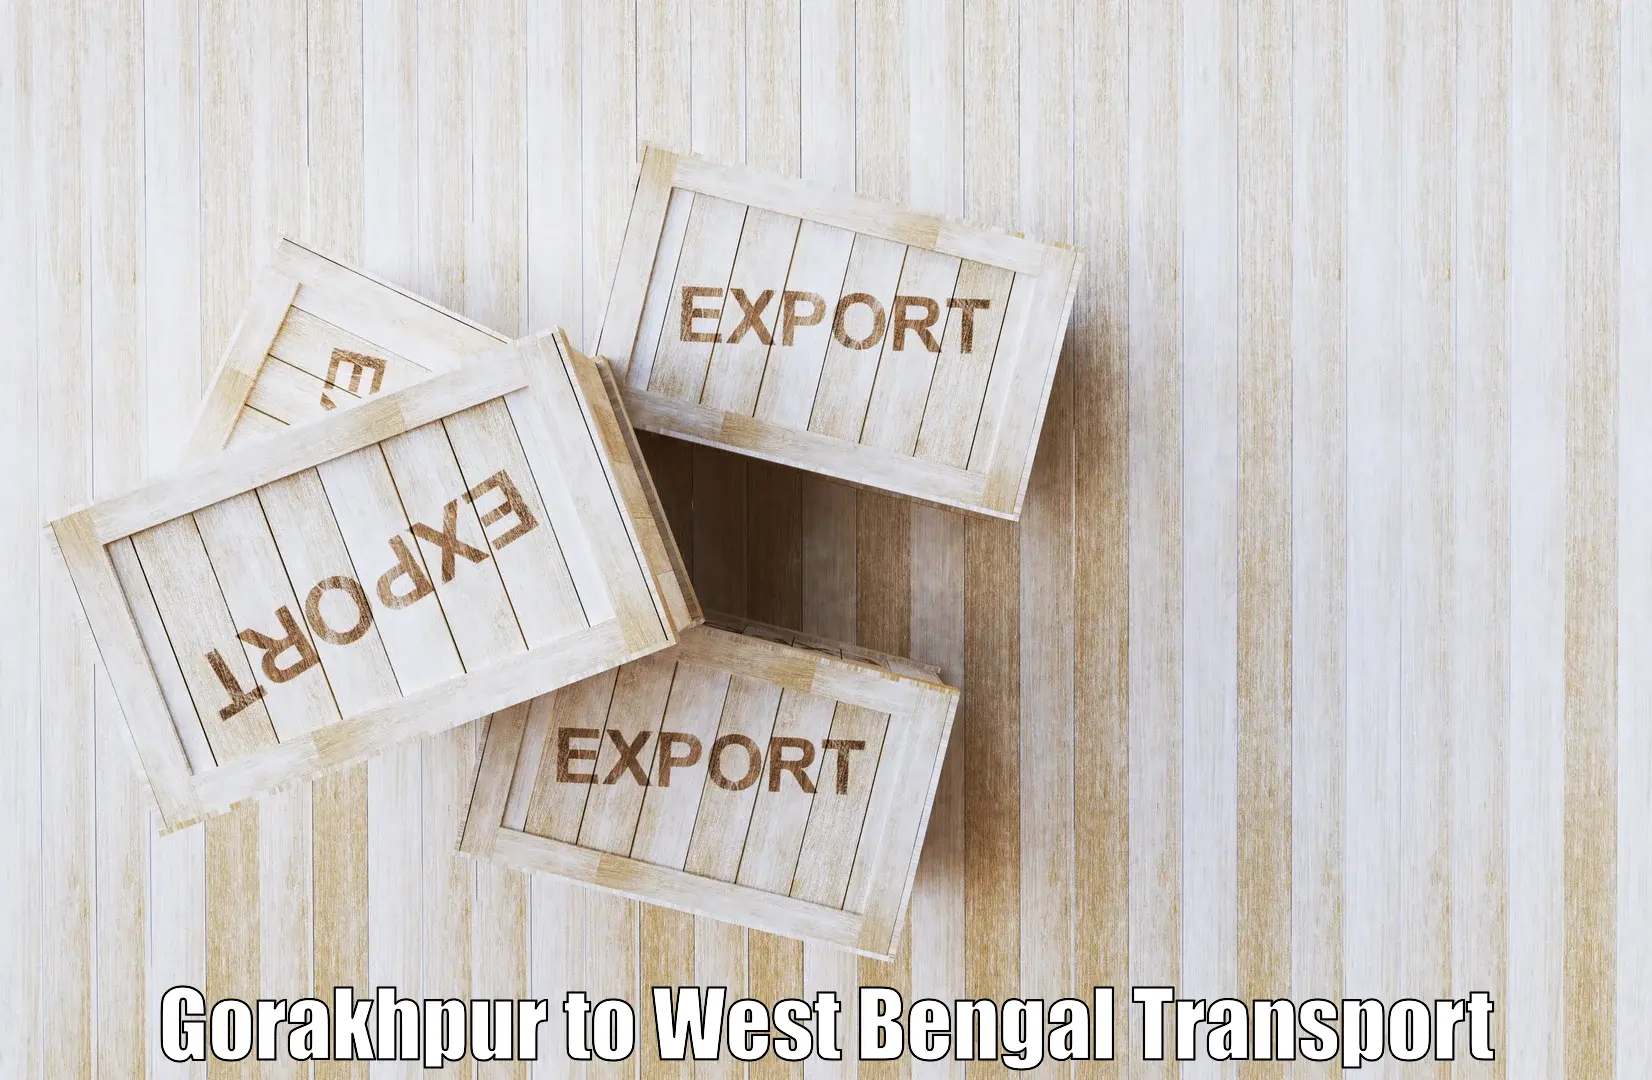 Interstate transport services Gorakhpur to Balagarh